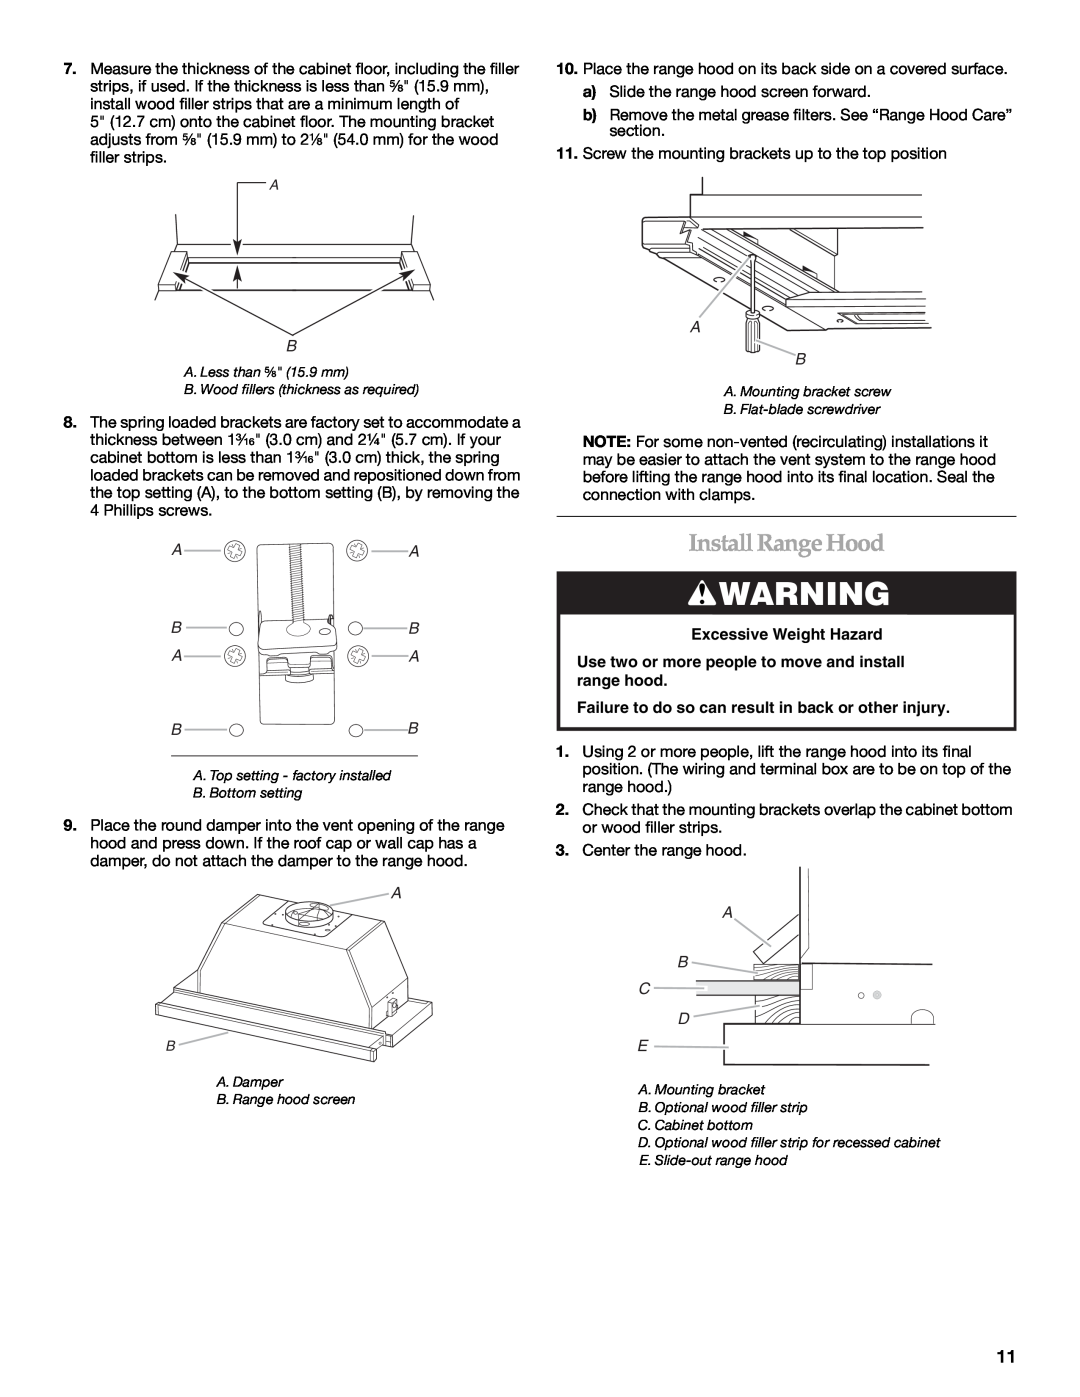 KitchenAid W10267109C installation instructions InstallRange Hood, A A Bb A A Bb, A B C D E, Excessive Weight Hazard 